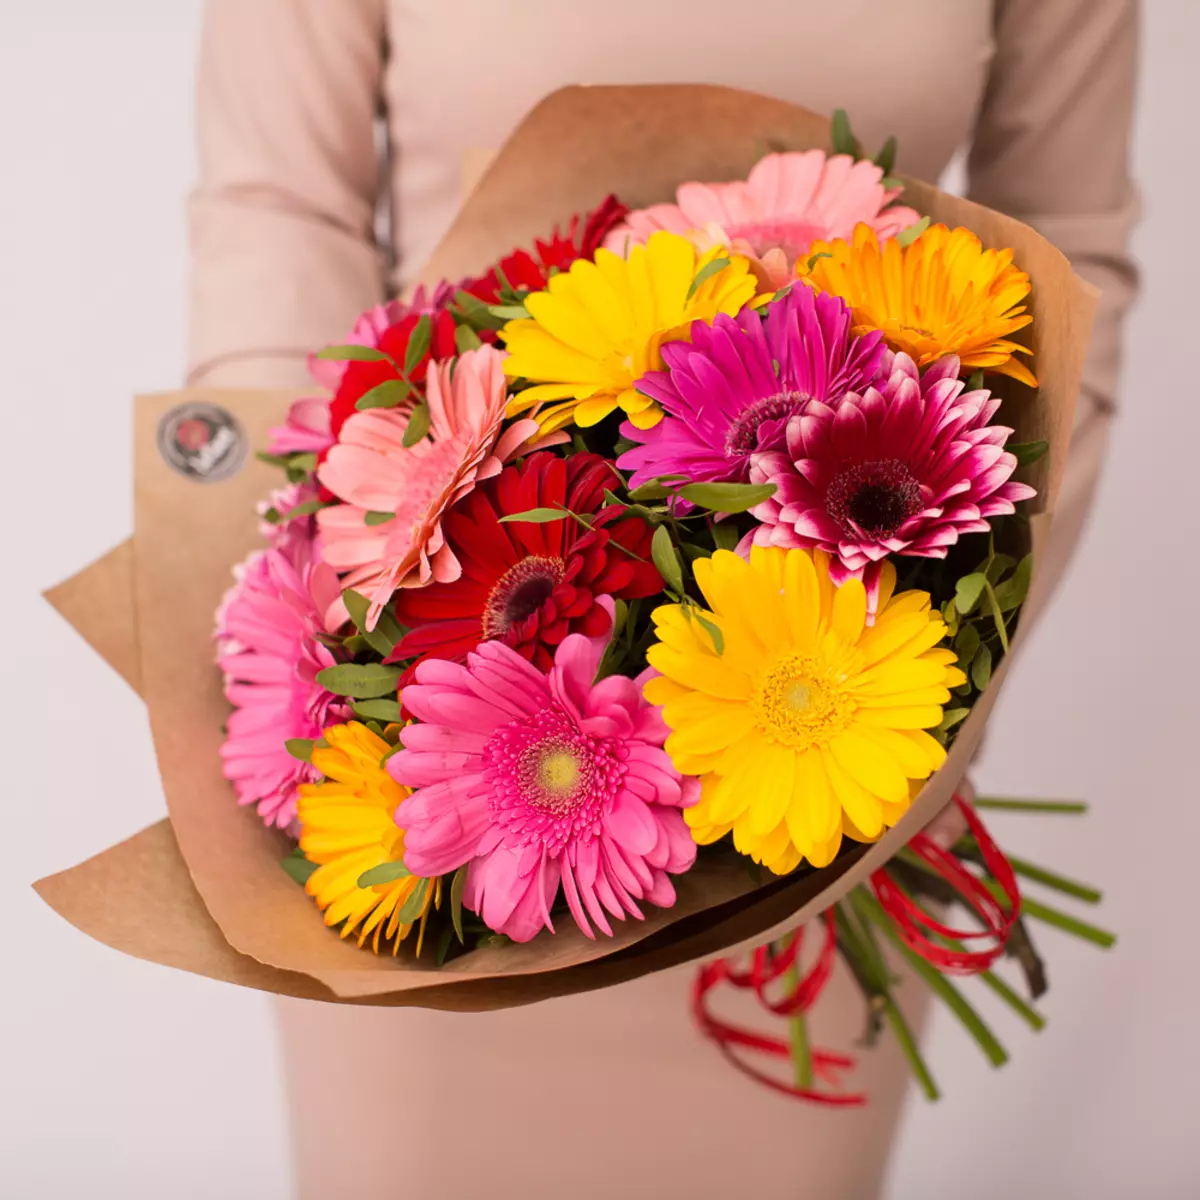 گل ها در تاریخ 8 مارس: دختران و زنان چه می کنند؟ بهتر است به همسر من بدهید؟ معمولا فروش می شود؟ چرا ممکن است لاله ها را بدهد؟ 18190_31